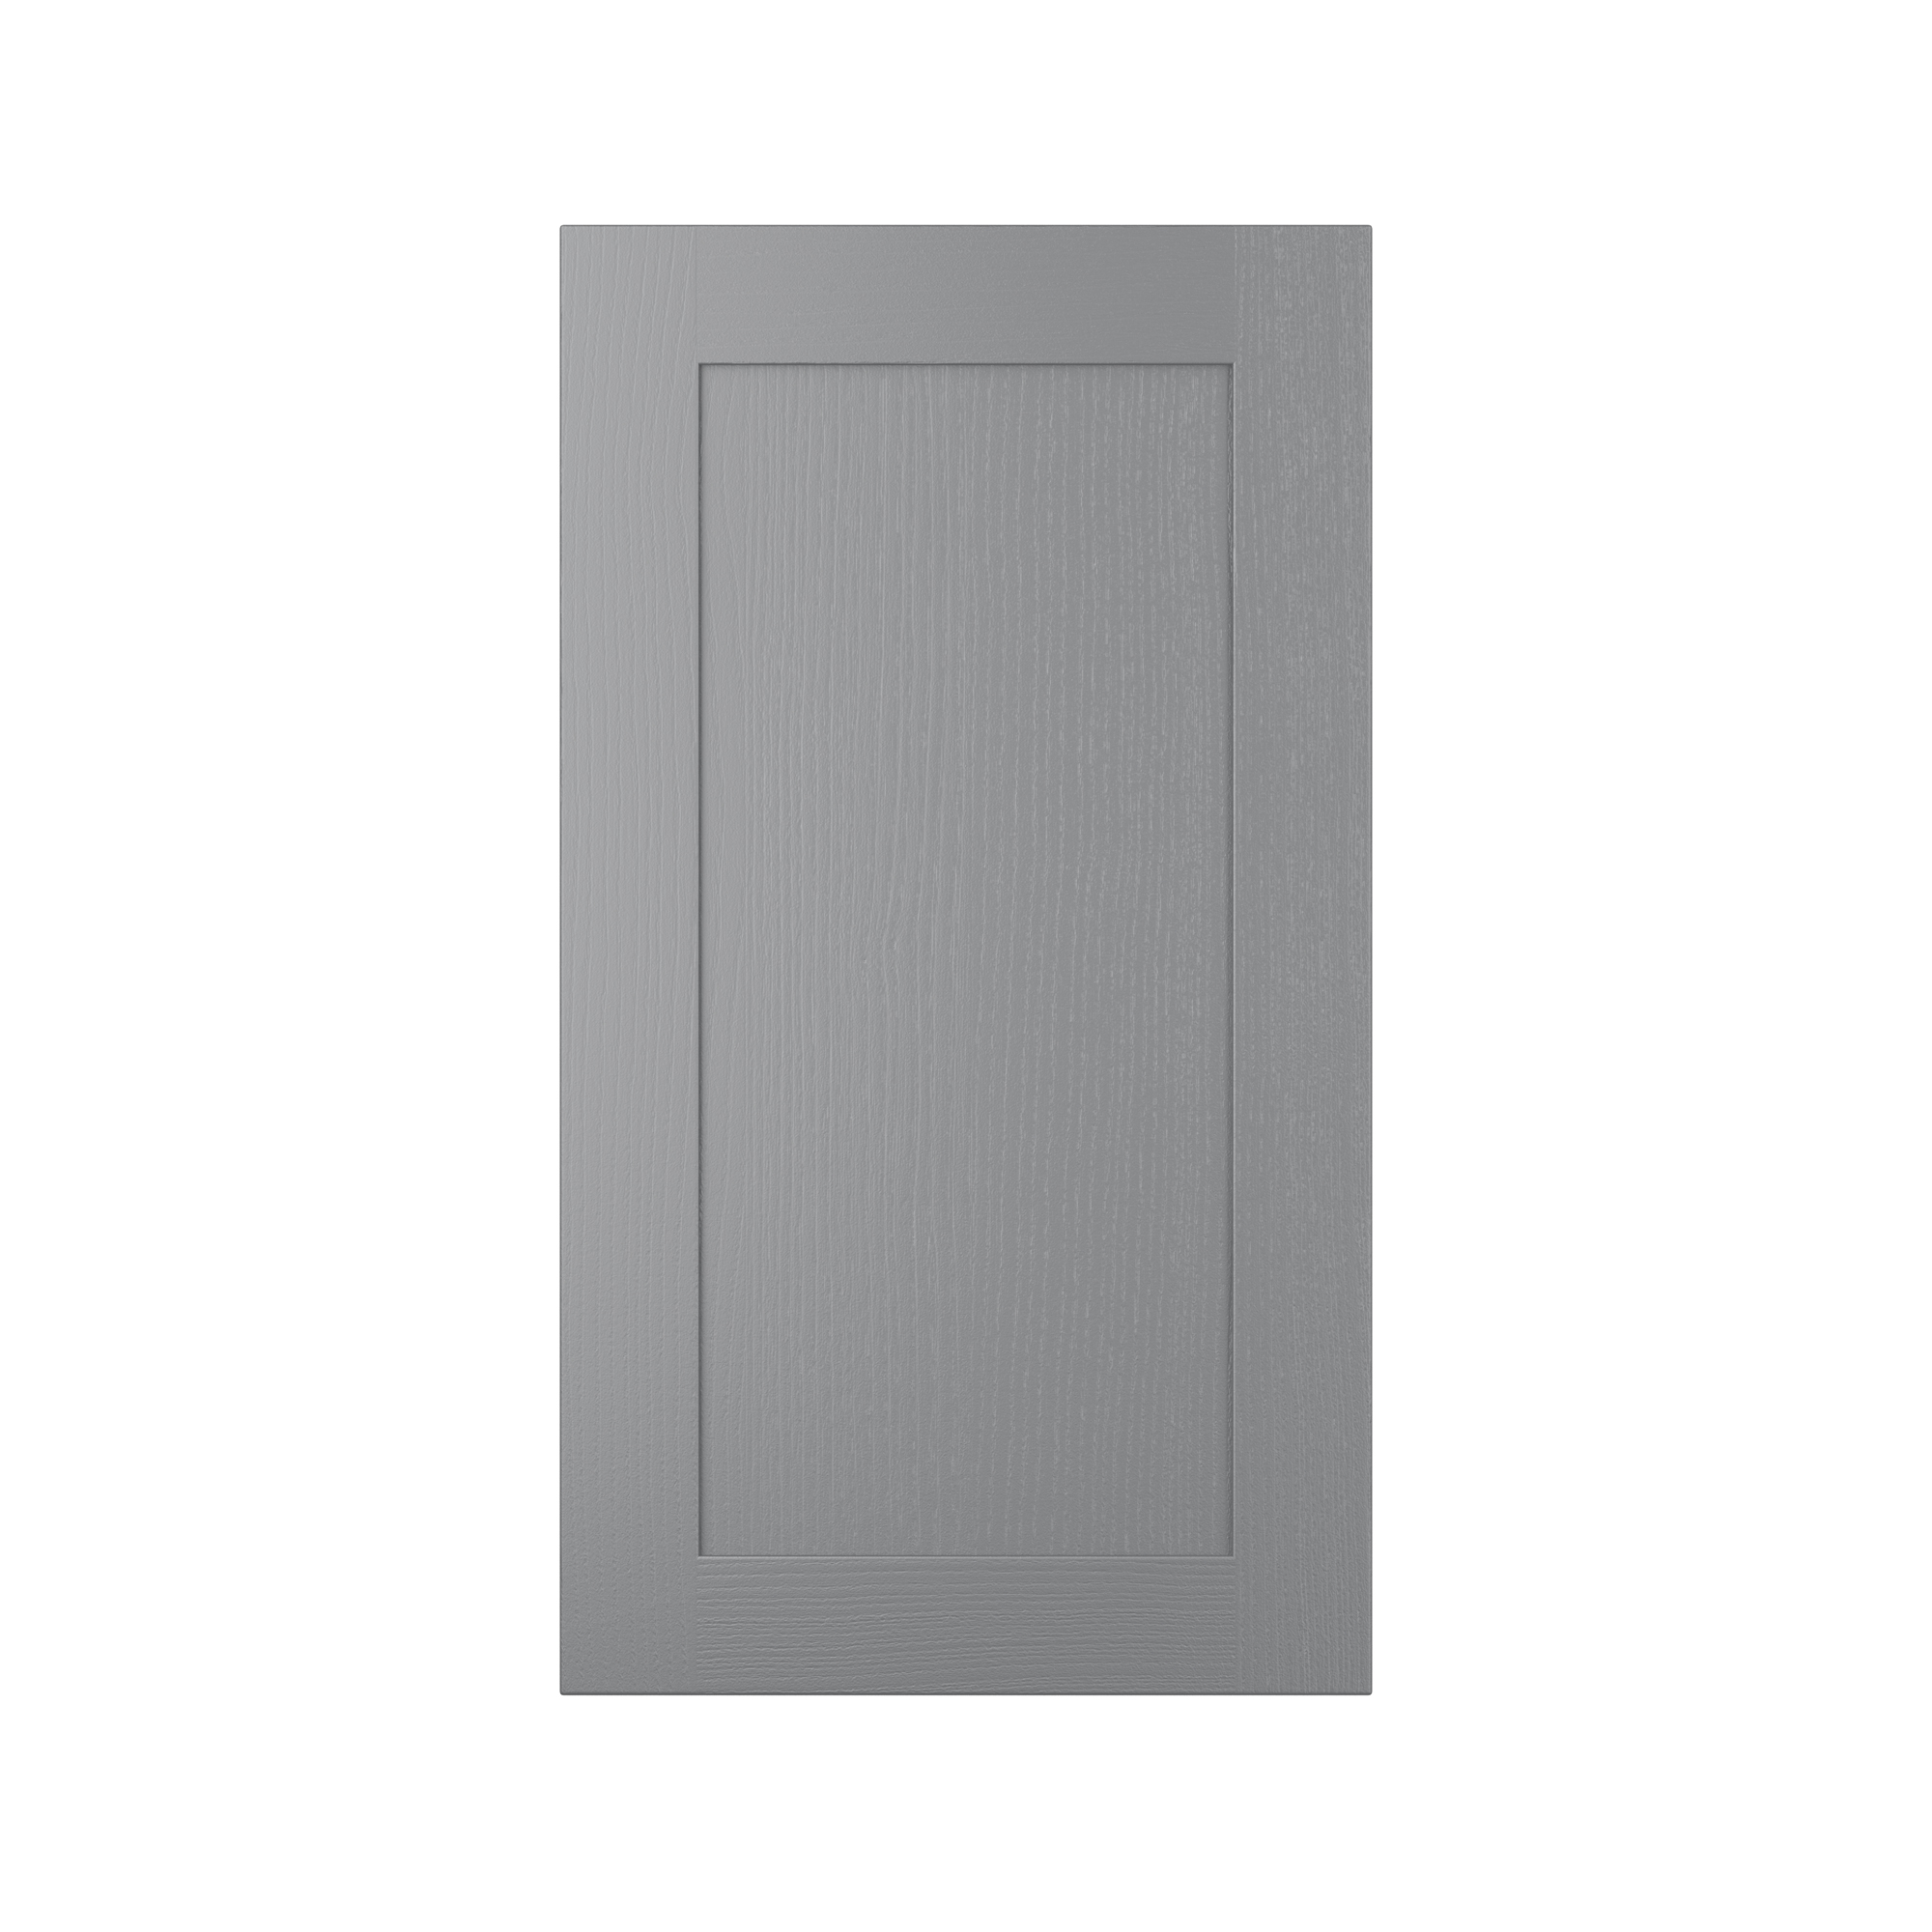 570 X 597 - Aldana Dust Grey